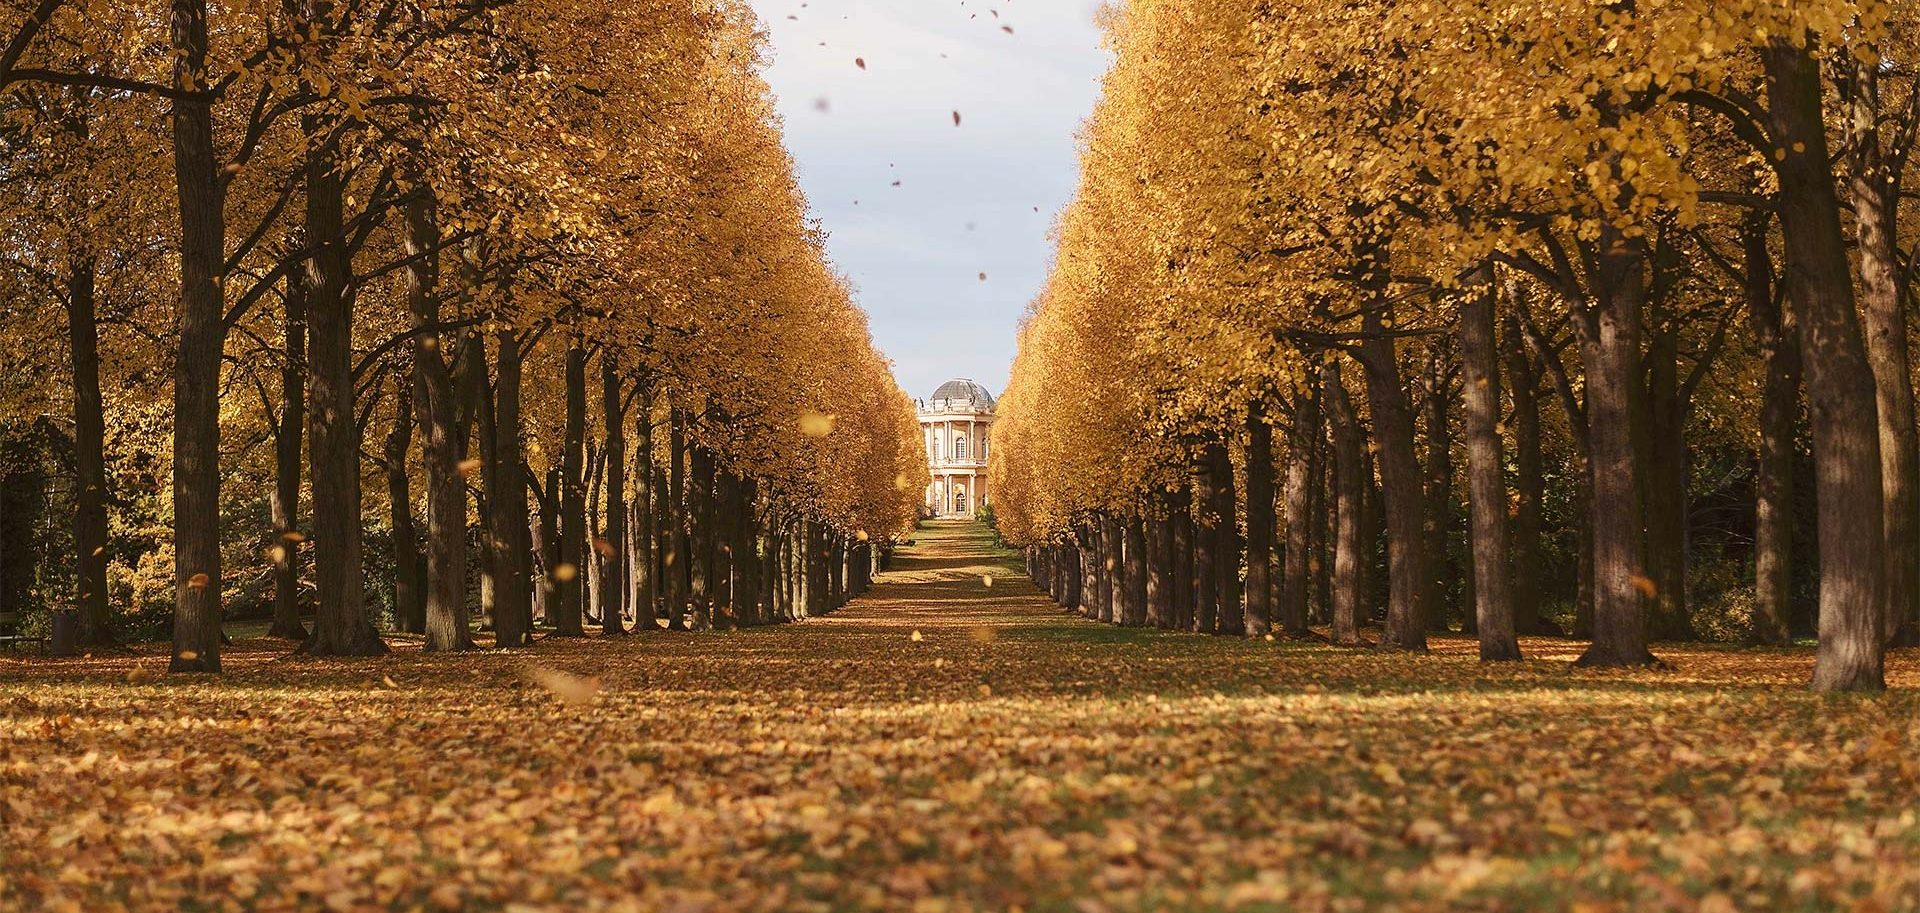 © Thilo Gögelein Fotografie // Streetfotografie und Landschaftsfotografie in Potsdam, Park Sanssouci Potsdam, Belvedere Klausberg bei Herbst